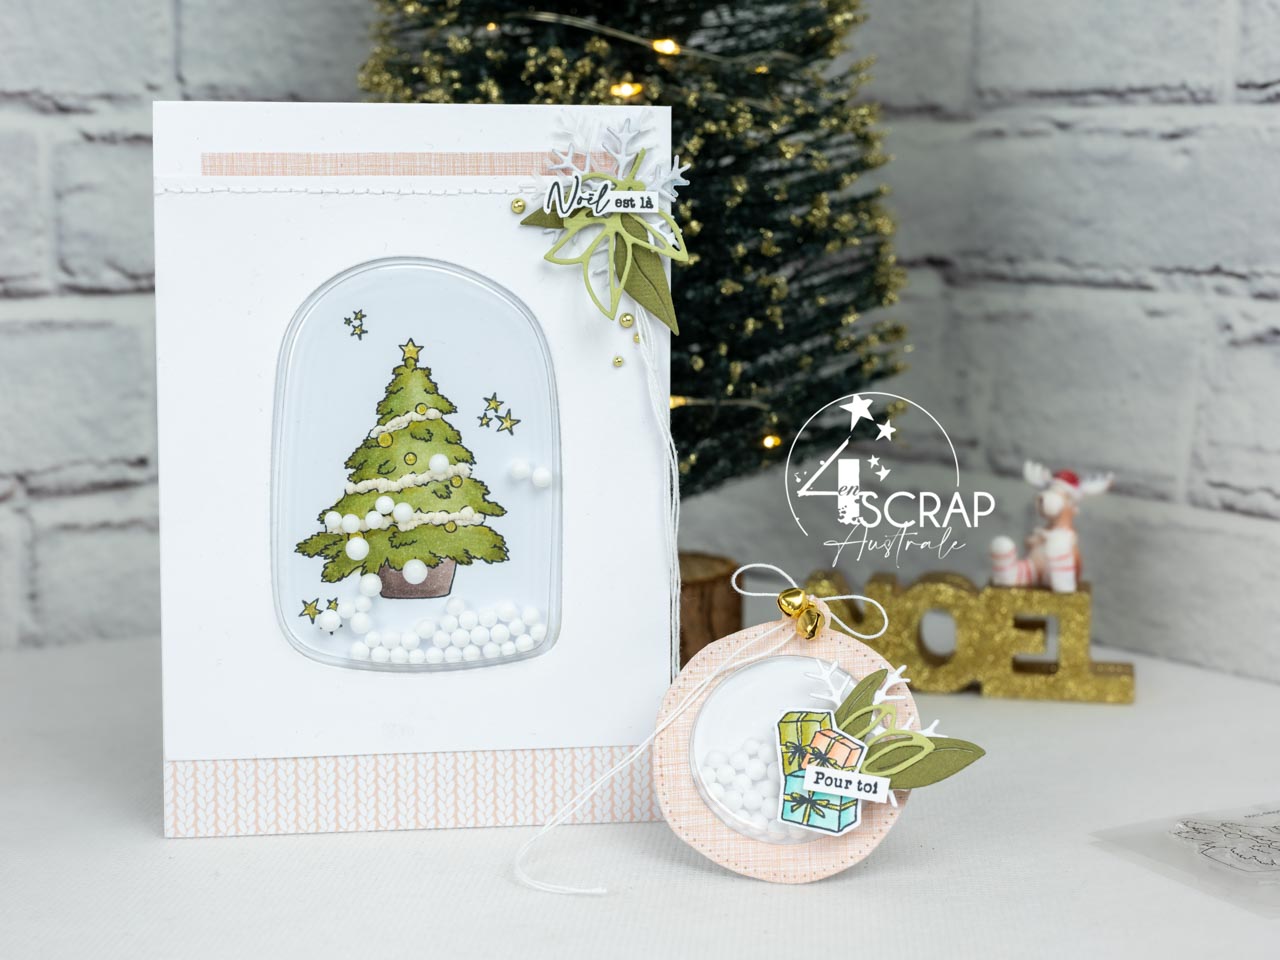 Créations d'une carte et étiquette cadeaux à secouer pour Noël avec sapin et cadeaux.